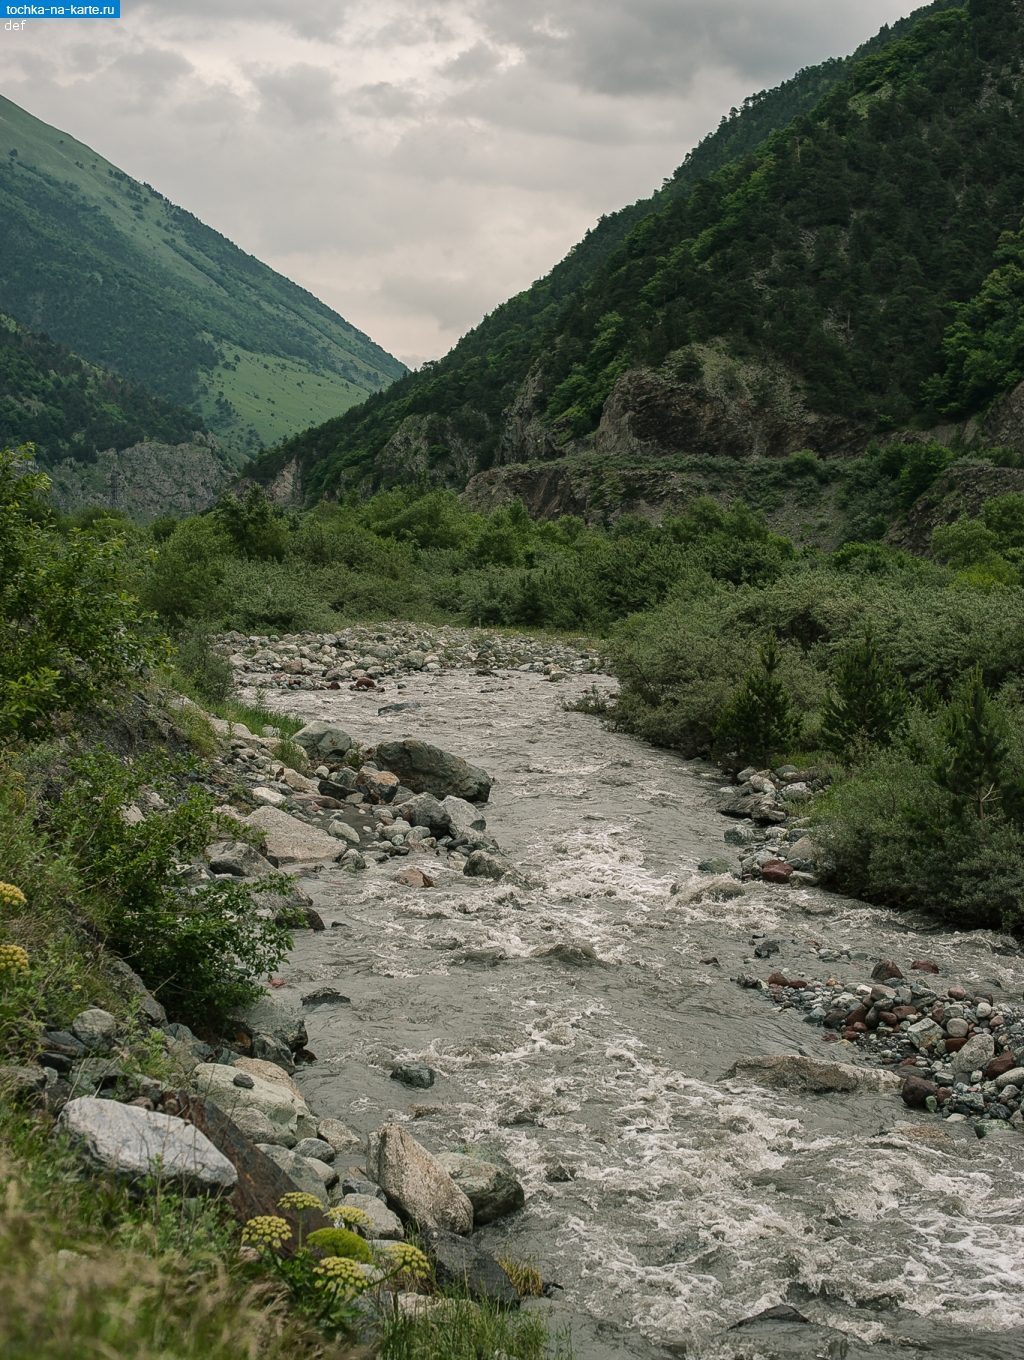 Северная Осетия. Река Терек возле пункта пропуска Верхний Ларс в Северной Осетии